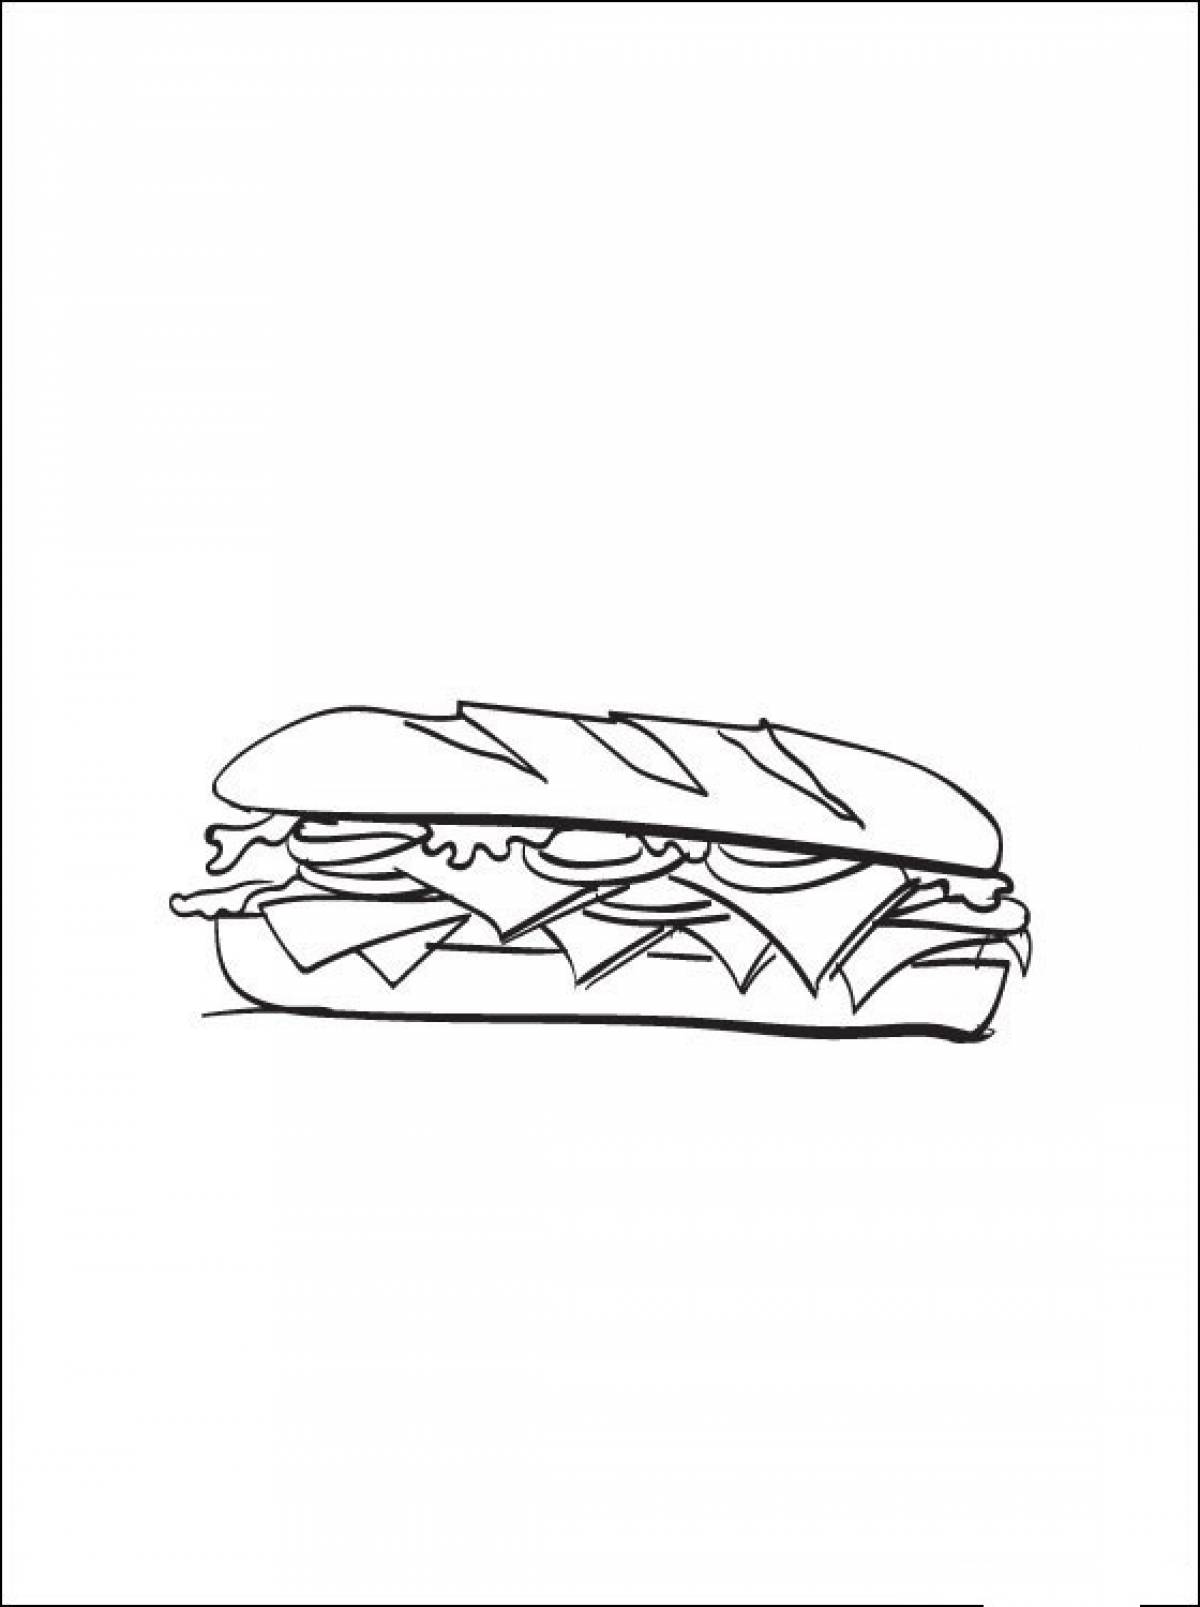 Baton sandwich